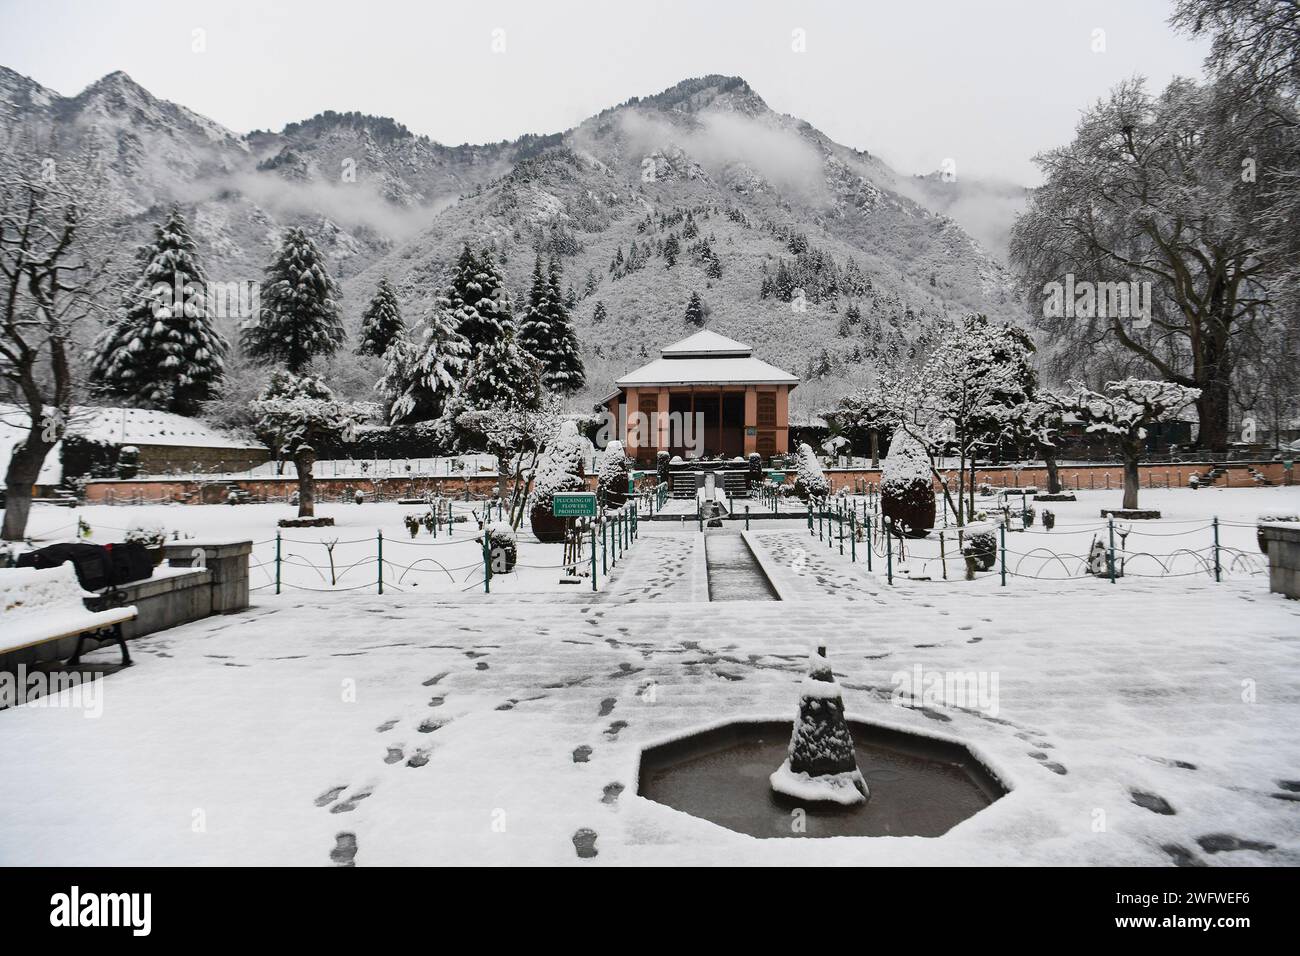 Neuschnee in den höheren Bergen des Kaschmir-Tals hat einen der längsten Trockenheitszeiten von rund zwei Monaten dieser Saison durchbrochen. Ein neuer Schneefall hat Einheimische und Touristen gleichermaßen angefeuert. Die Wirtschaft des Bundesstaates ist stark von der Tourismusbranche abhängig, und der Schneefall nach langer Wartezeit dürfte Touristen in das glitzernde Silbertal locken. Kaschmir, Indien. Stockfoto